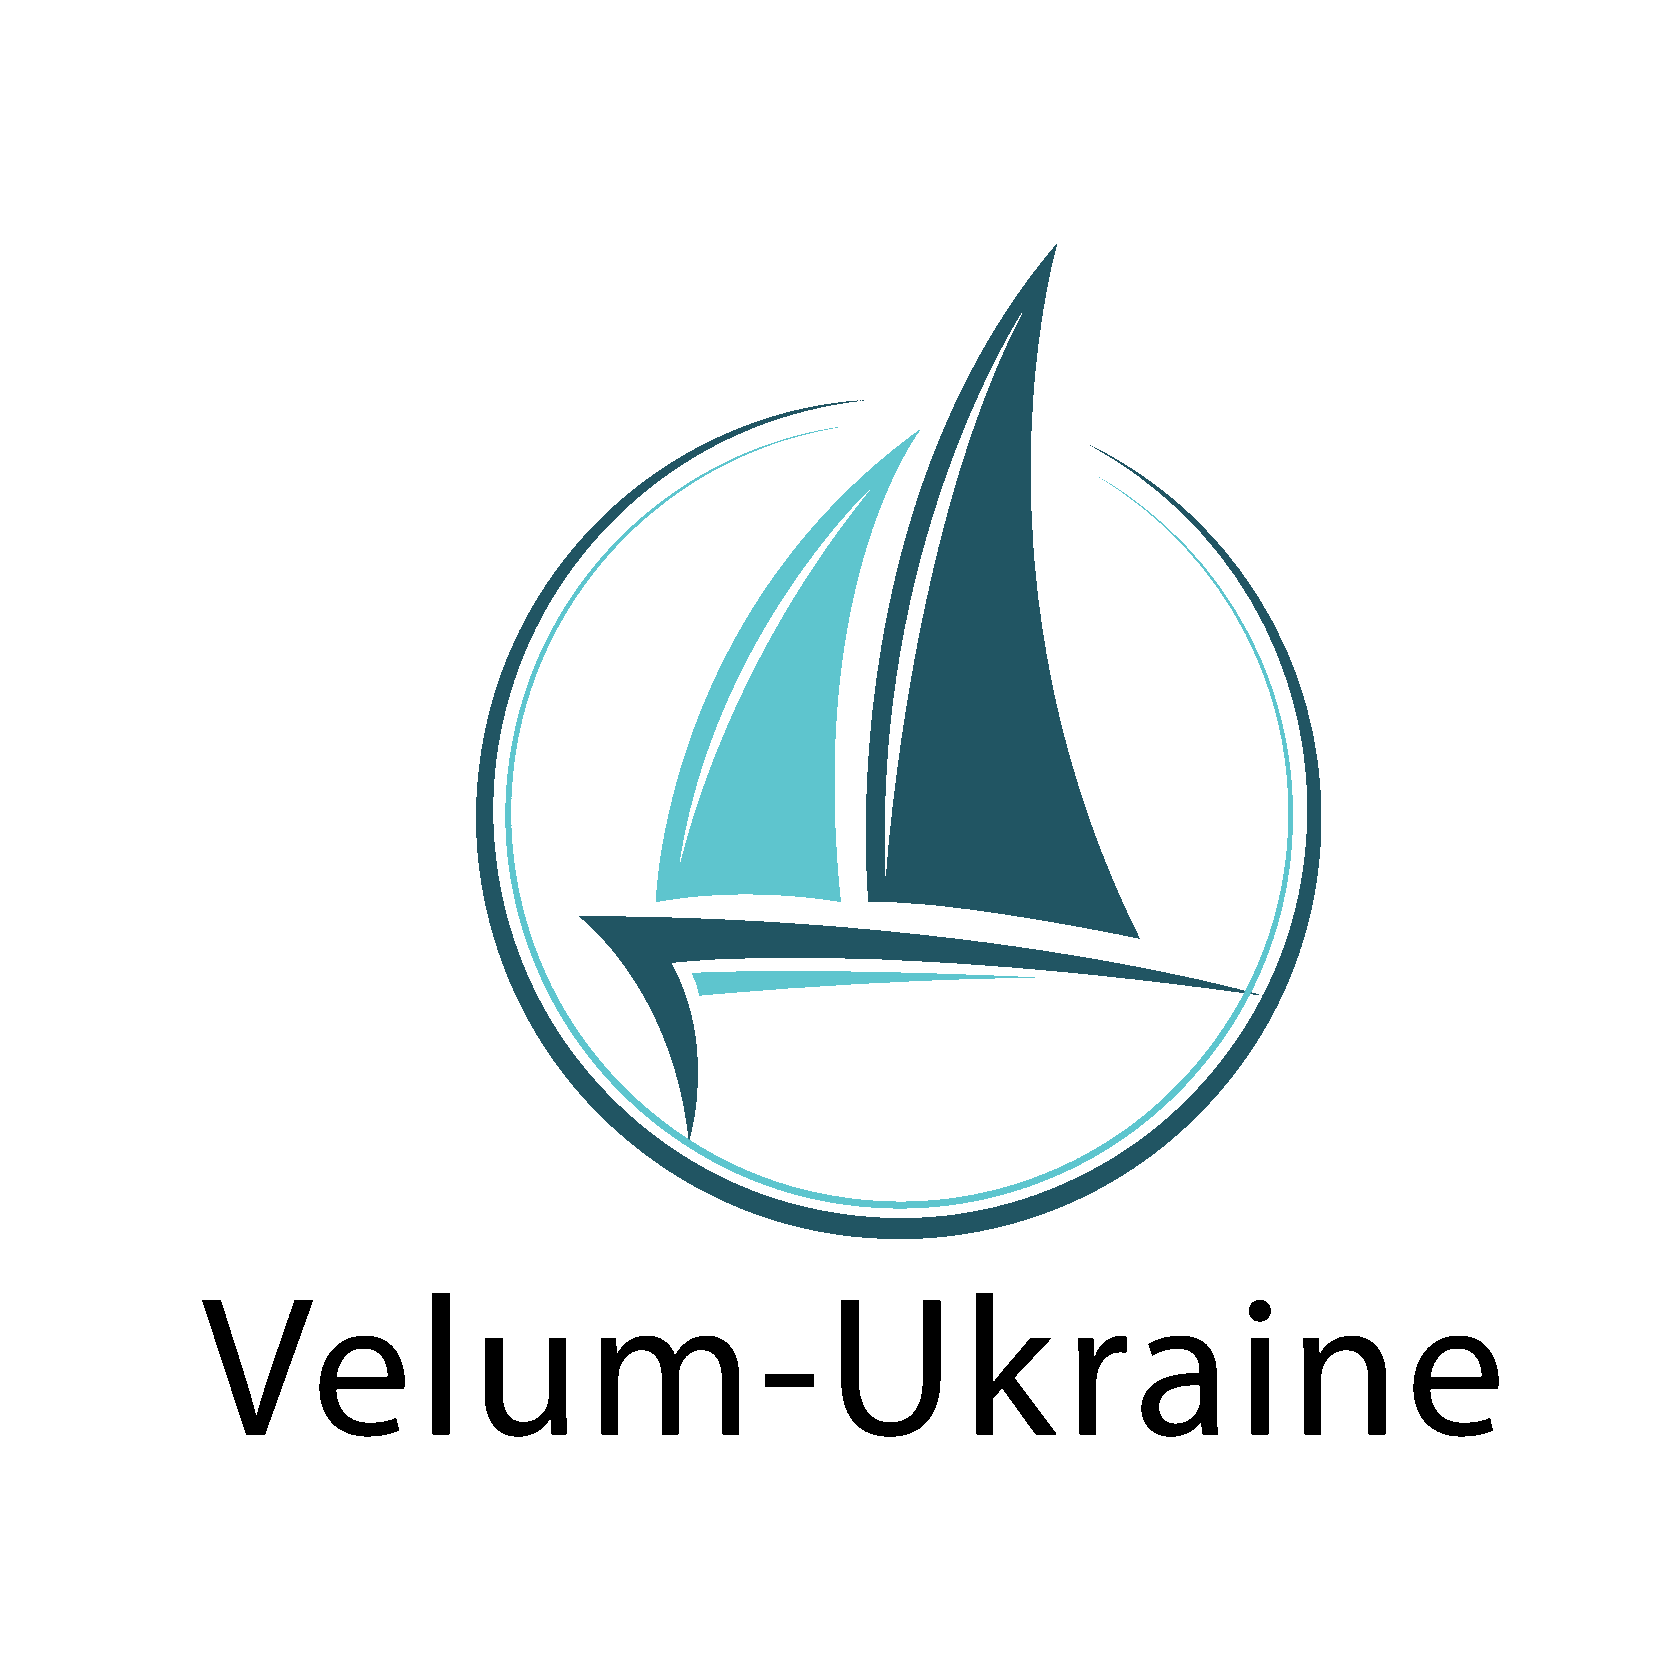 http://velum-ukraine.com/rus